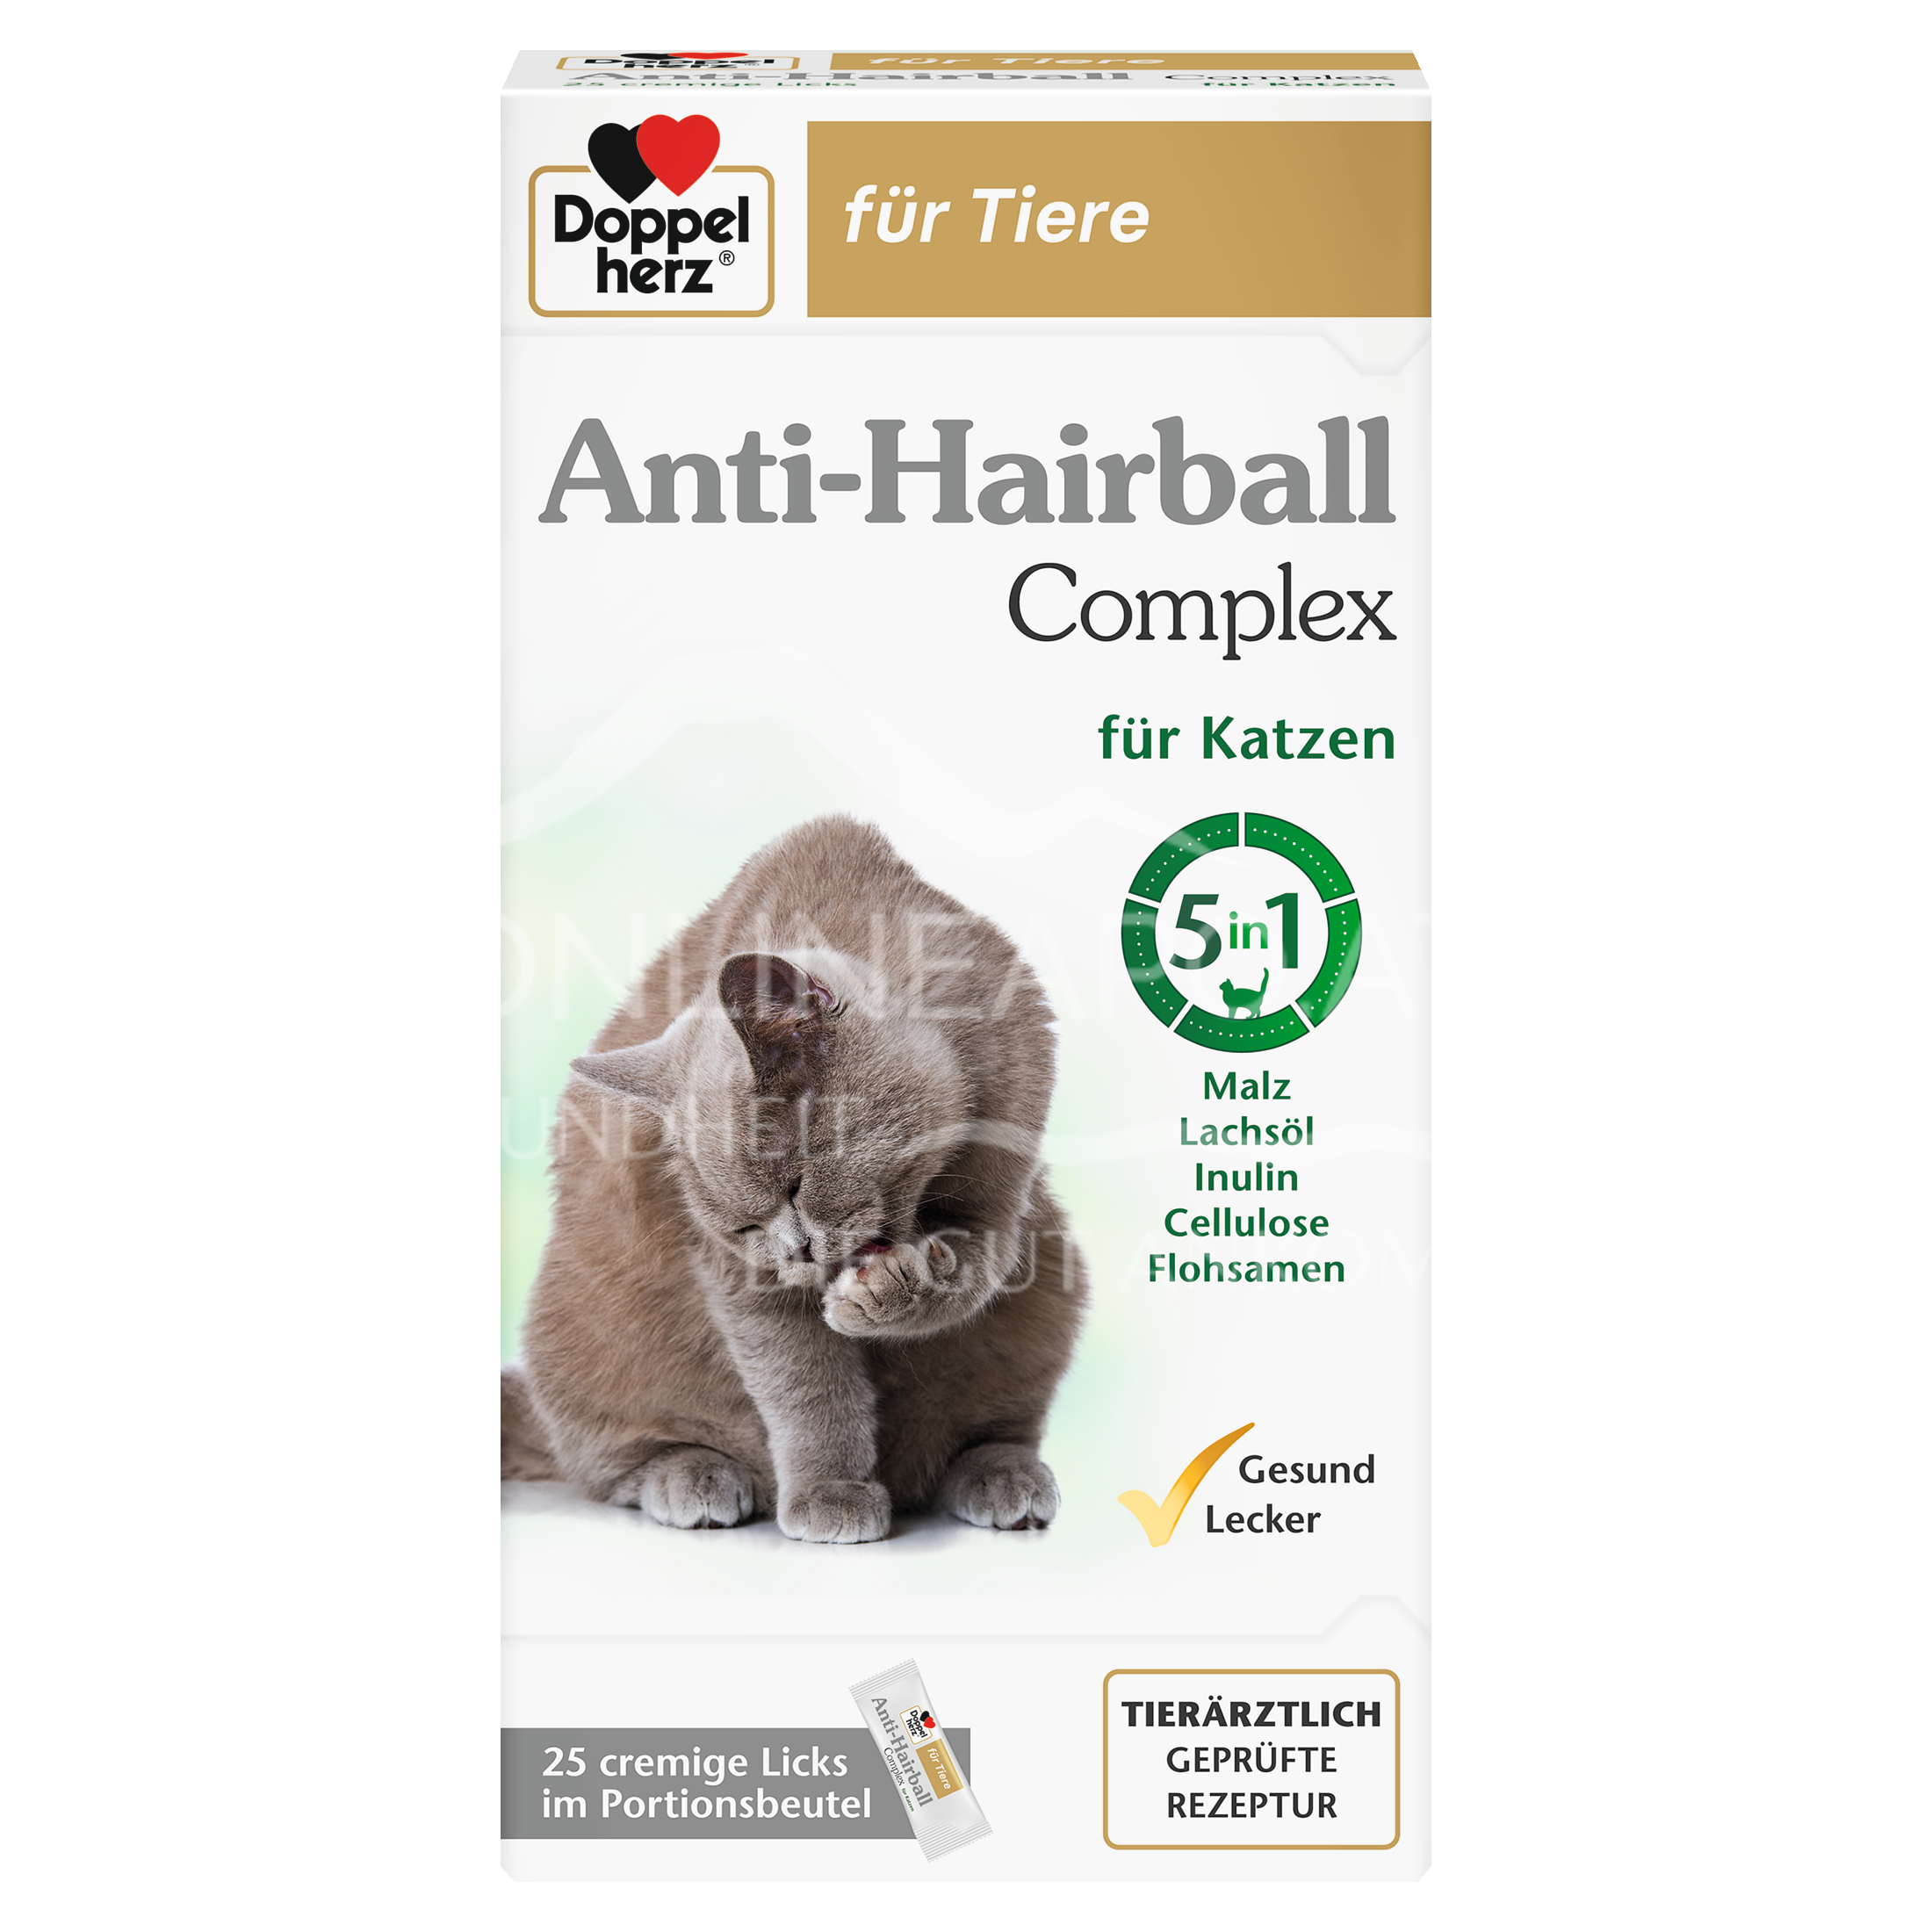 Doppelherz für Tiere Anti-Hairball Complex für Katzen Cremige Licks im Portionsbeutel